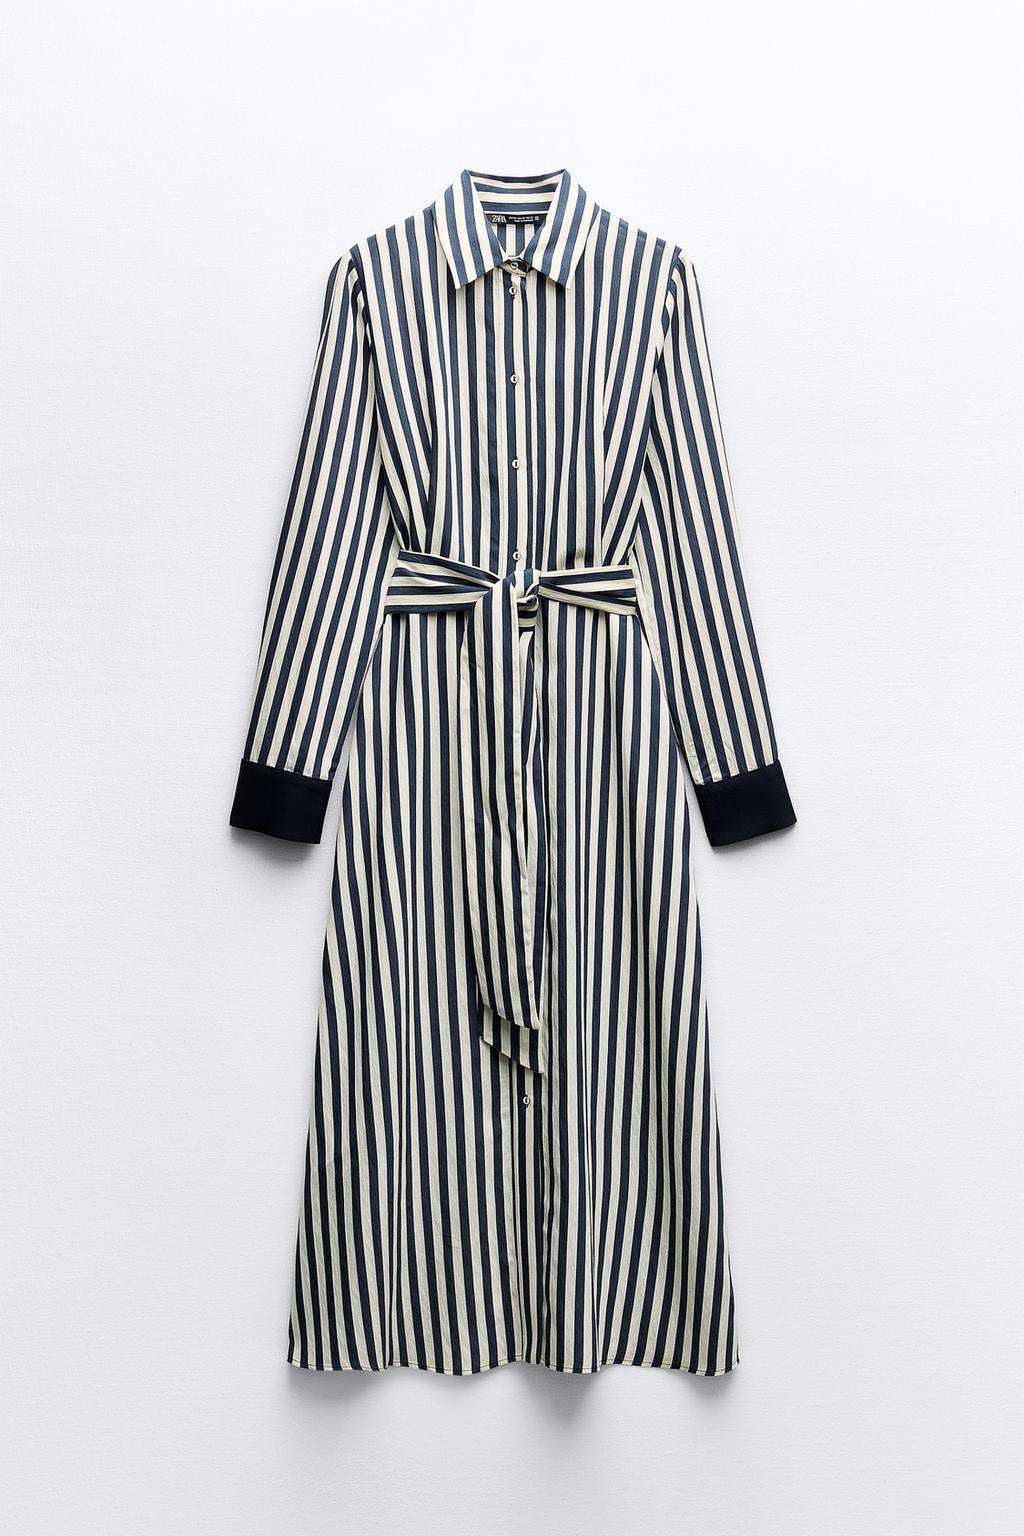 Vestido camisero midi rayas de Zara 39,95 euros